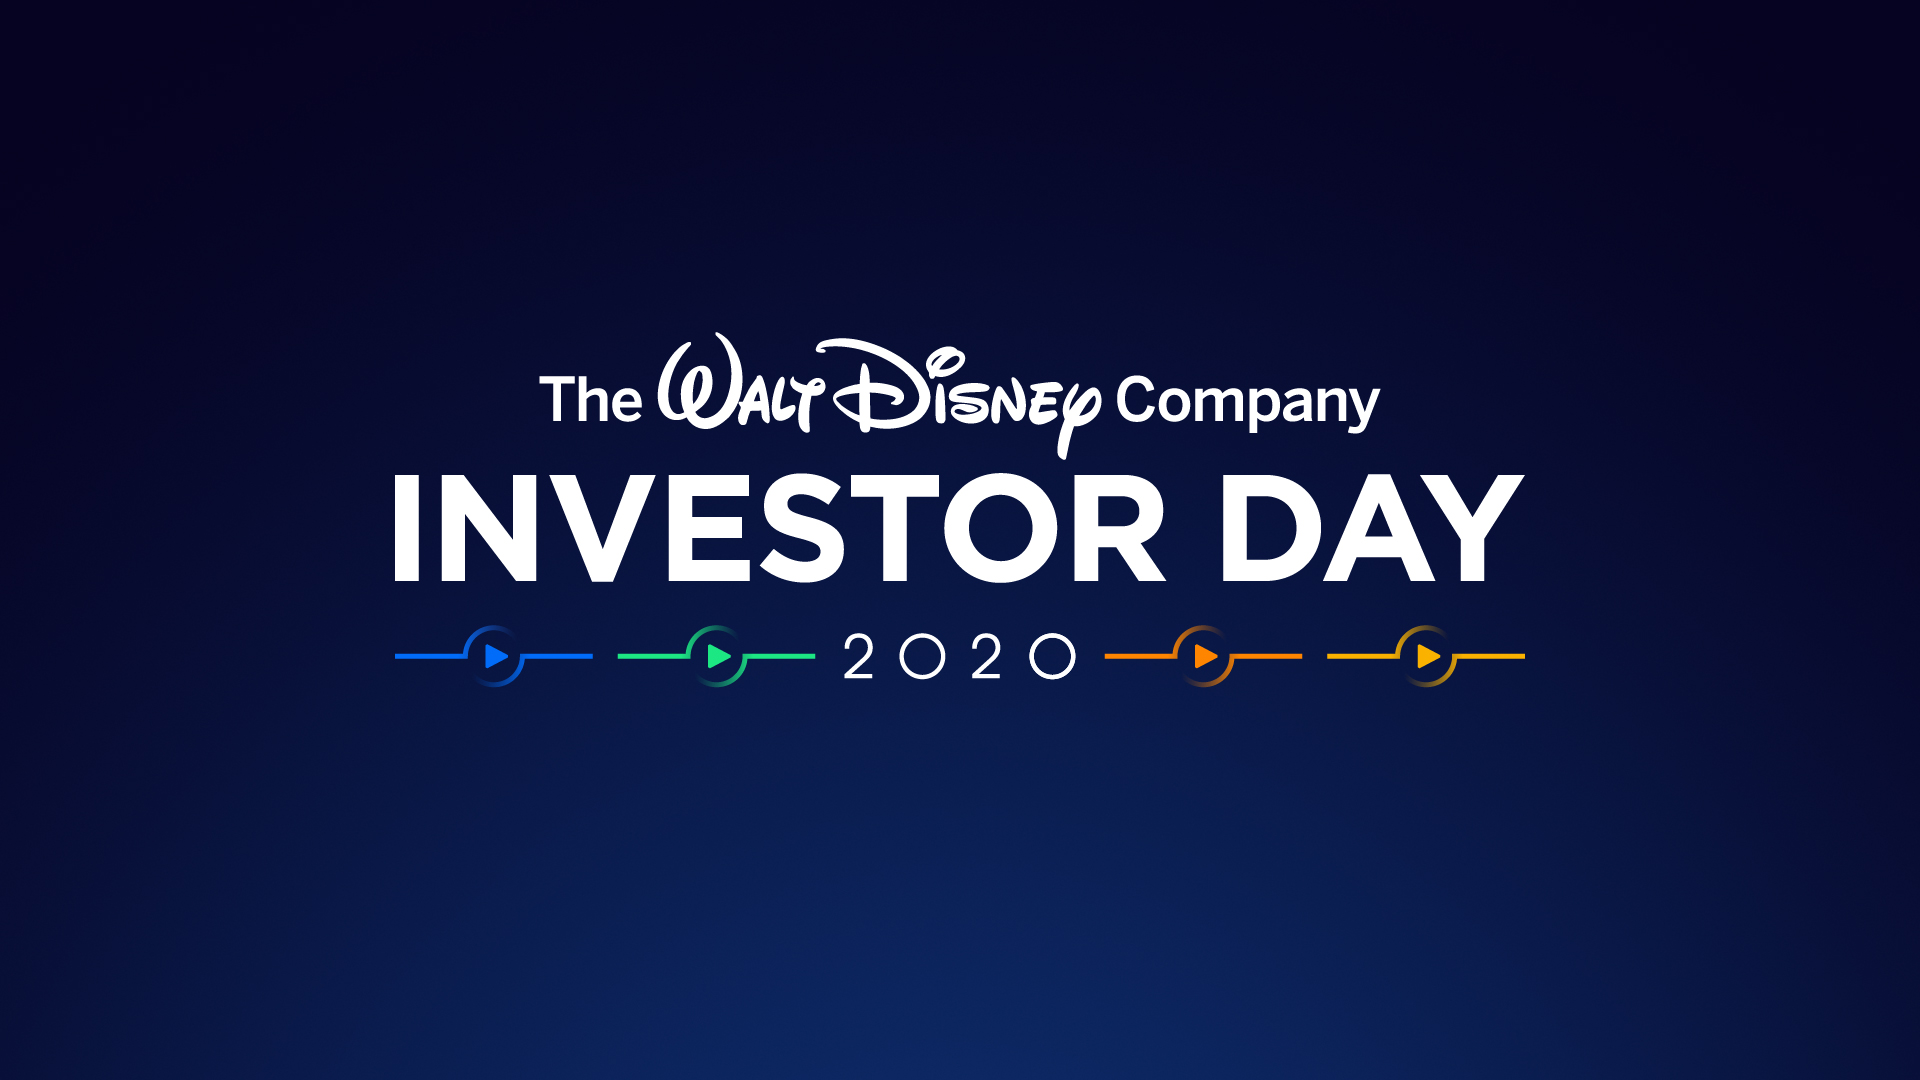 The Walt Disney Company Surpasses 137 Million Paid Subscriptions across